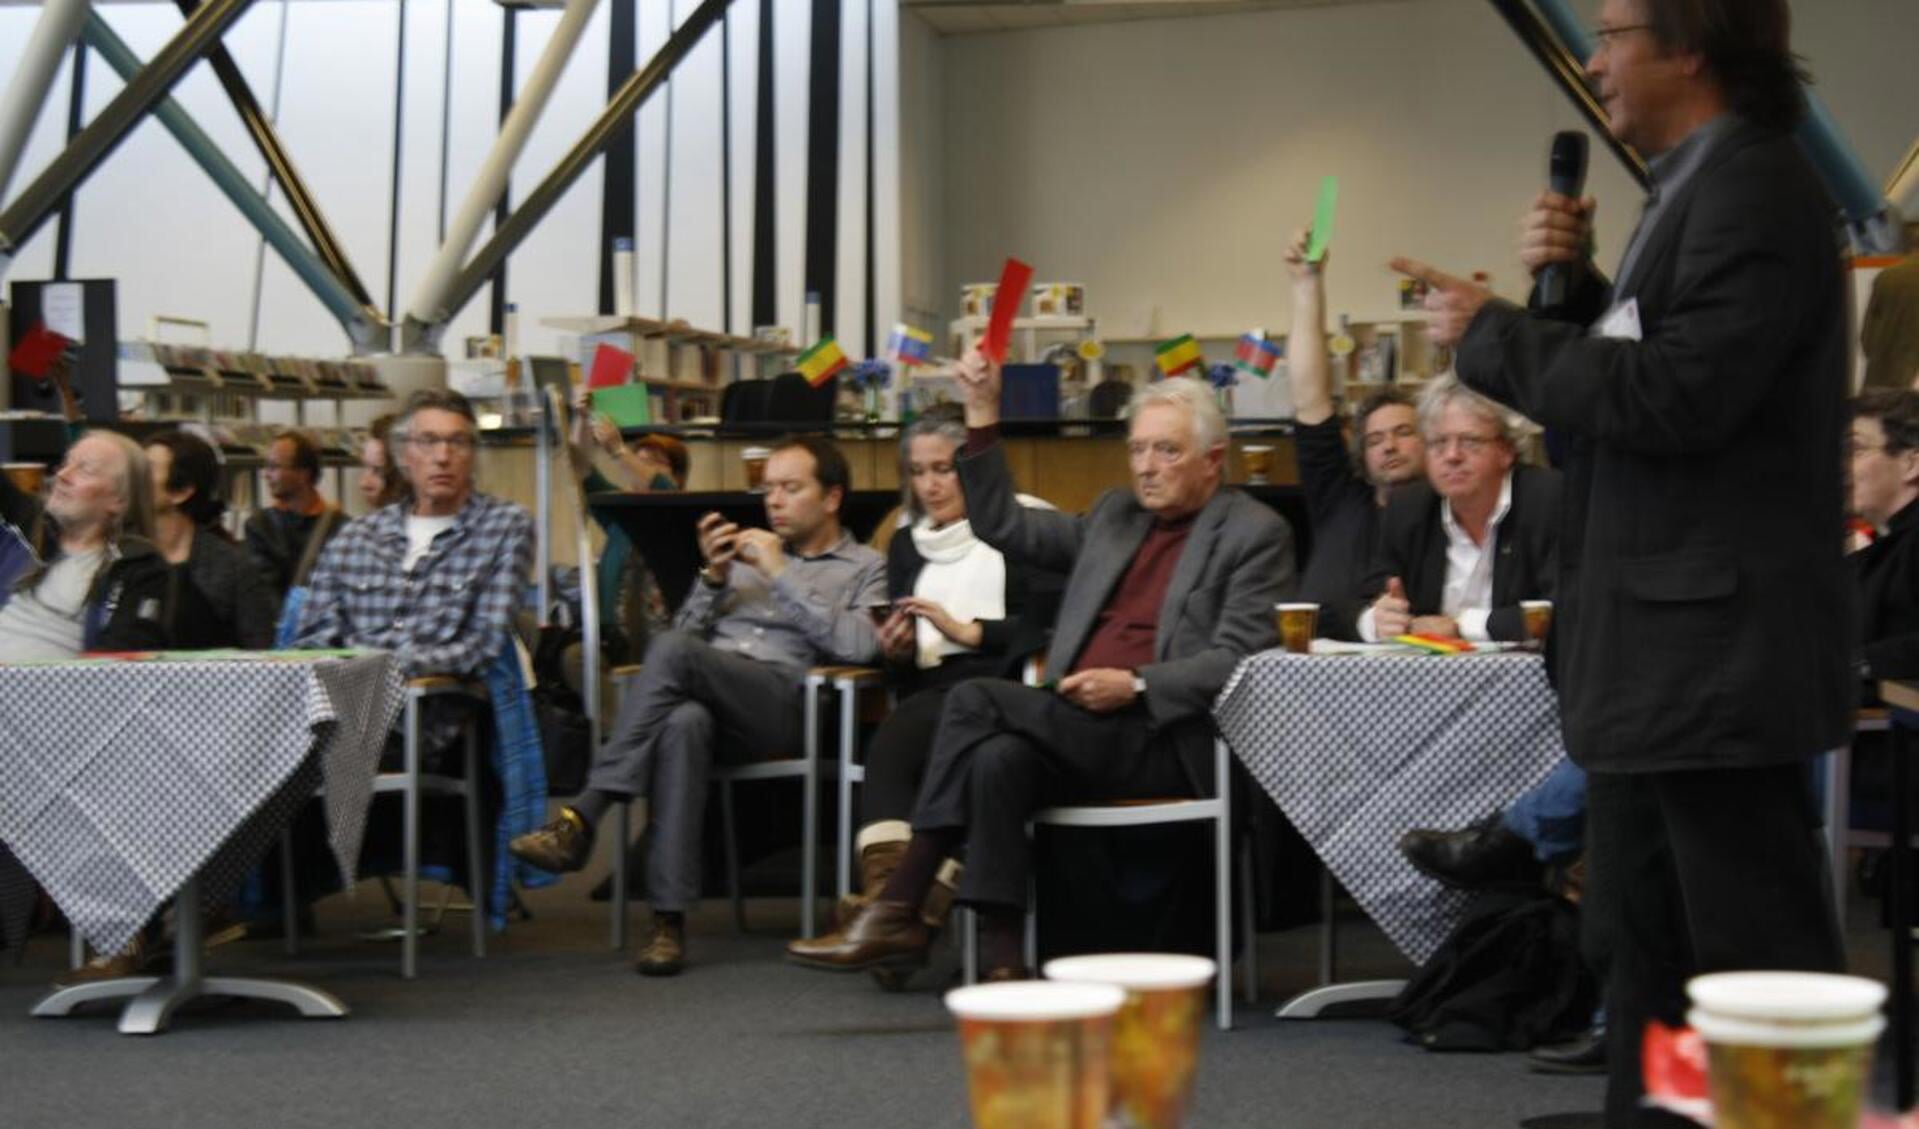 Het debat 'Verkiezingen voor Iedereen' werd gehouden in de Bibliotheek van Breda. foto Debra van der Heide